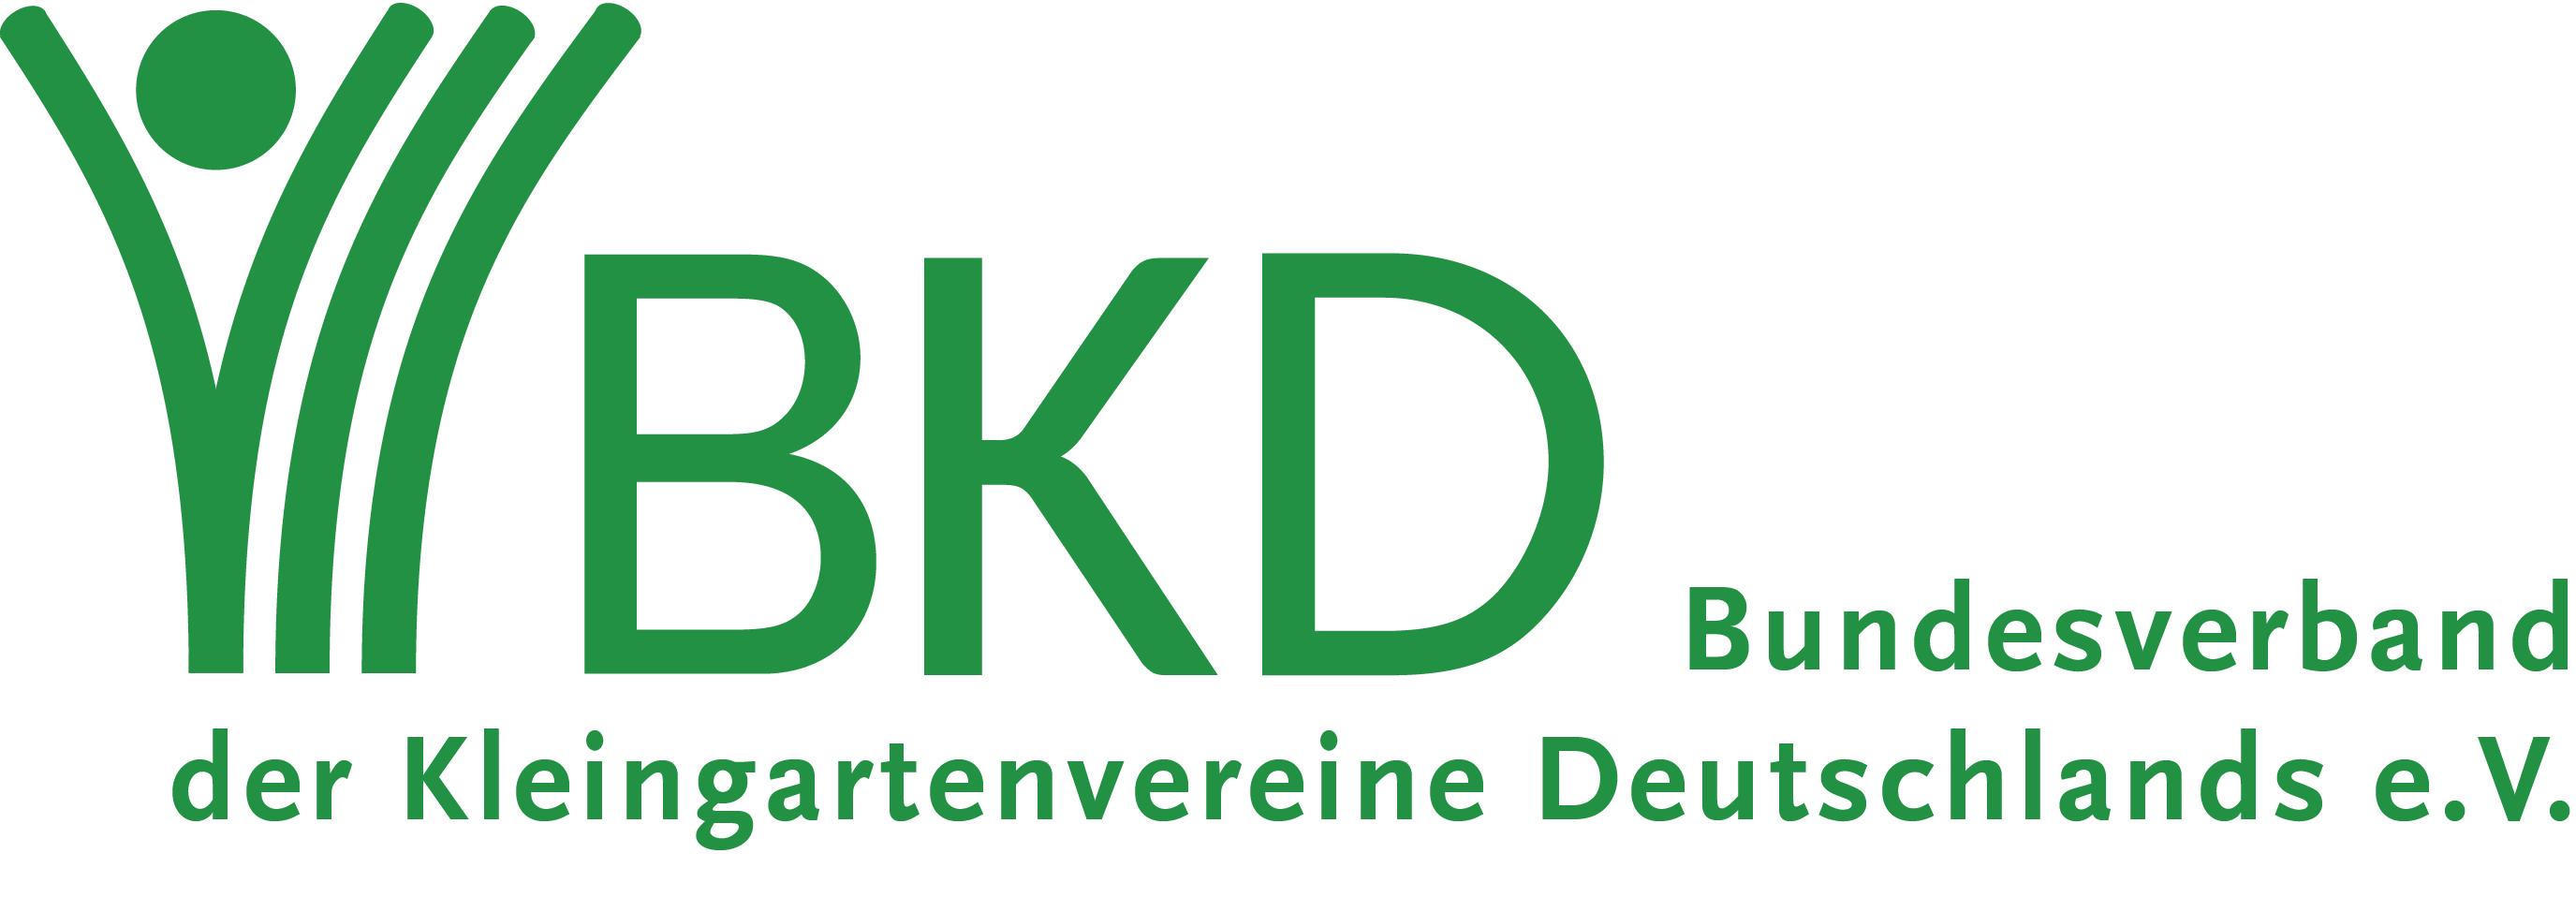 Bundesveband der Kleingartenvereine Deutschland e.V.